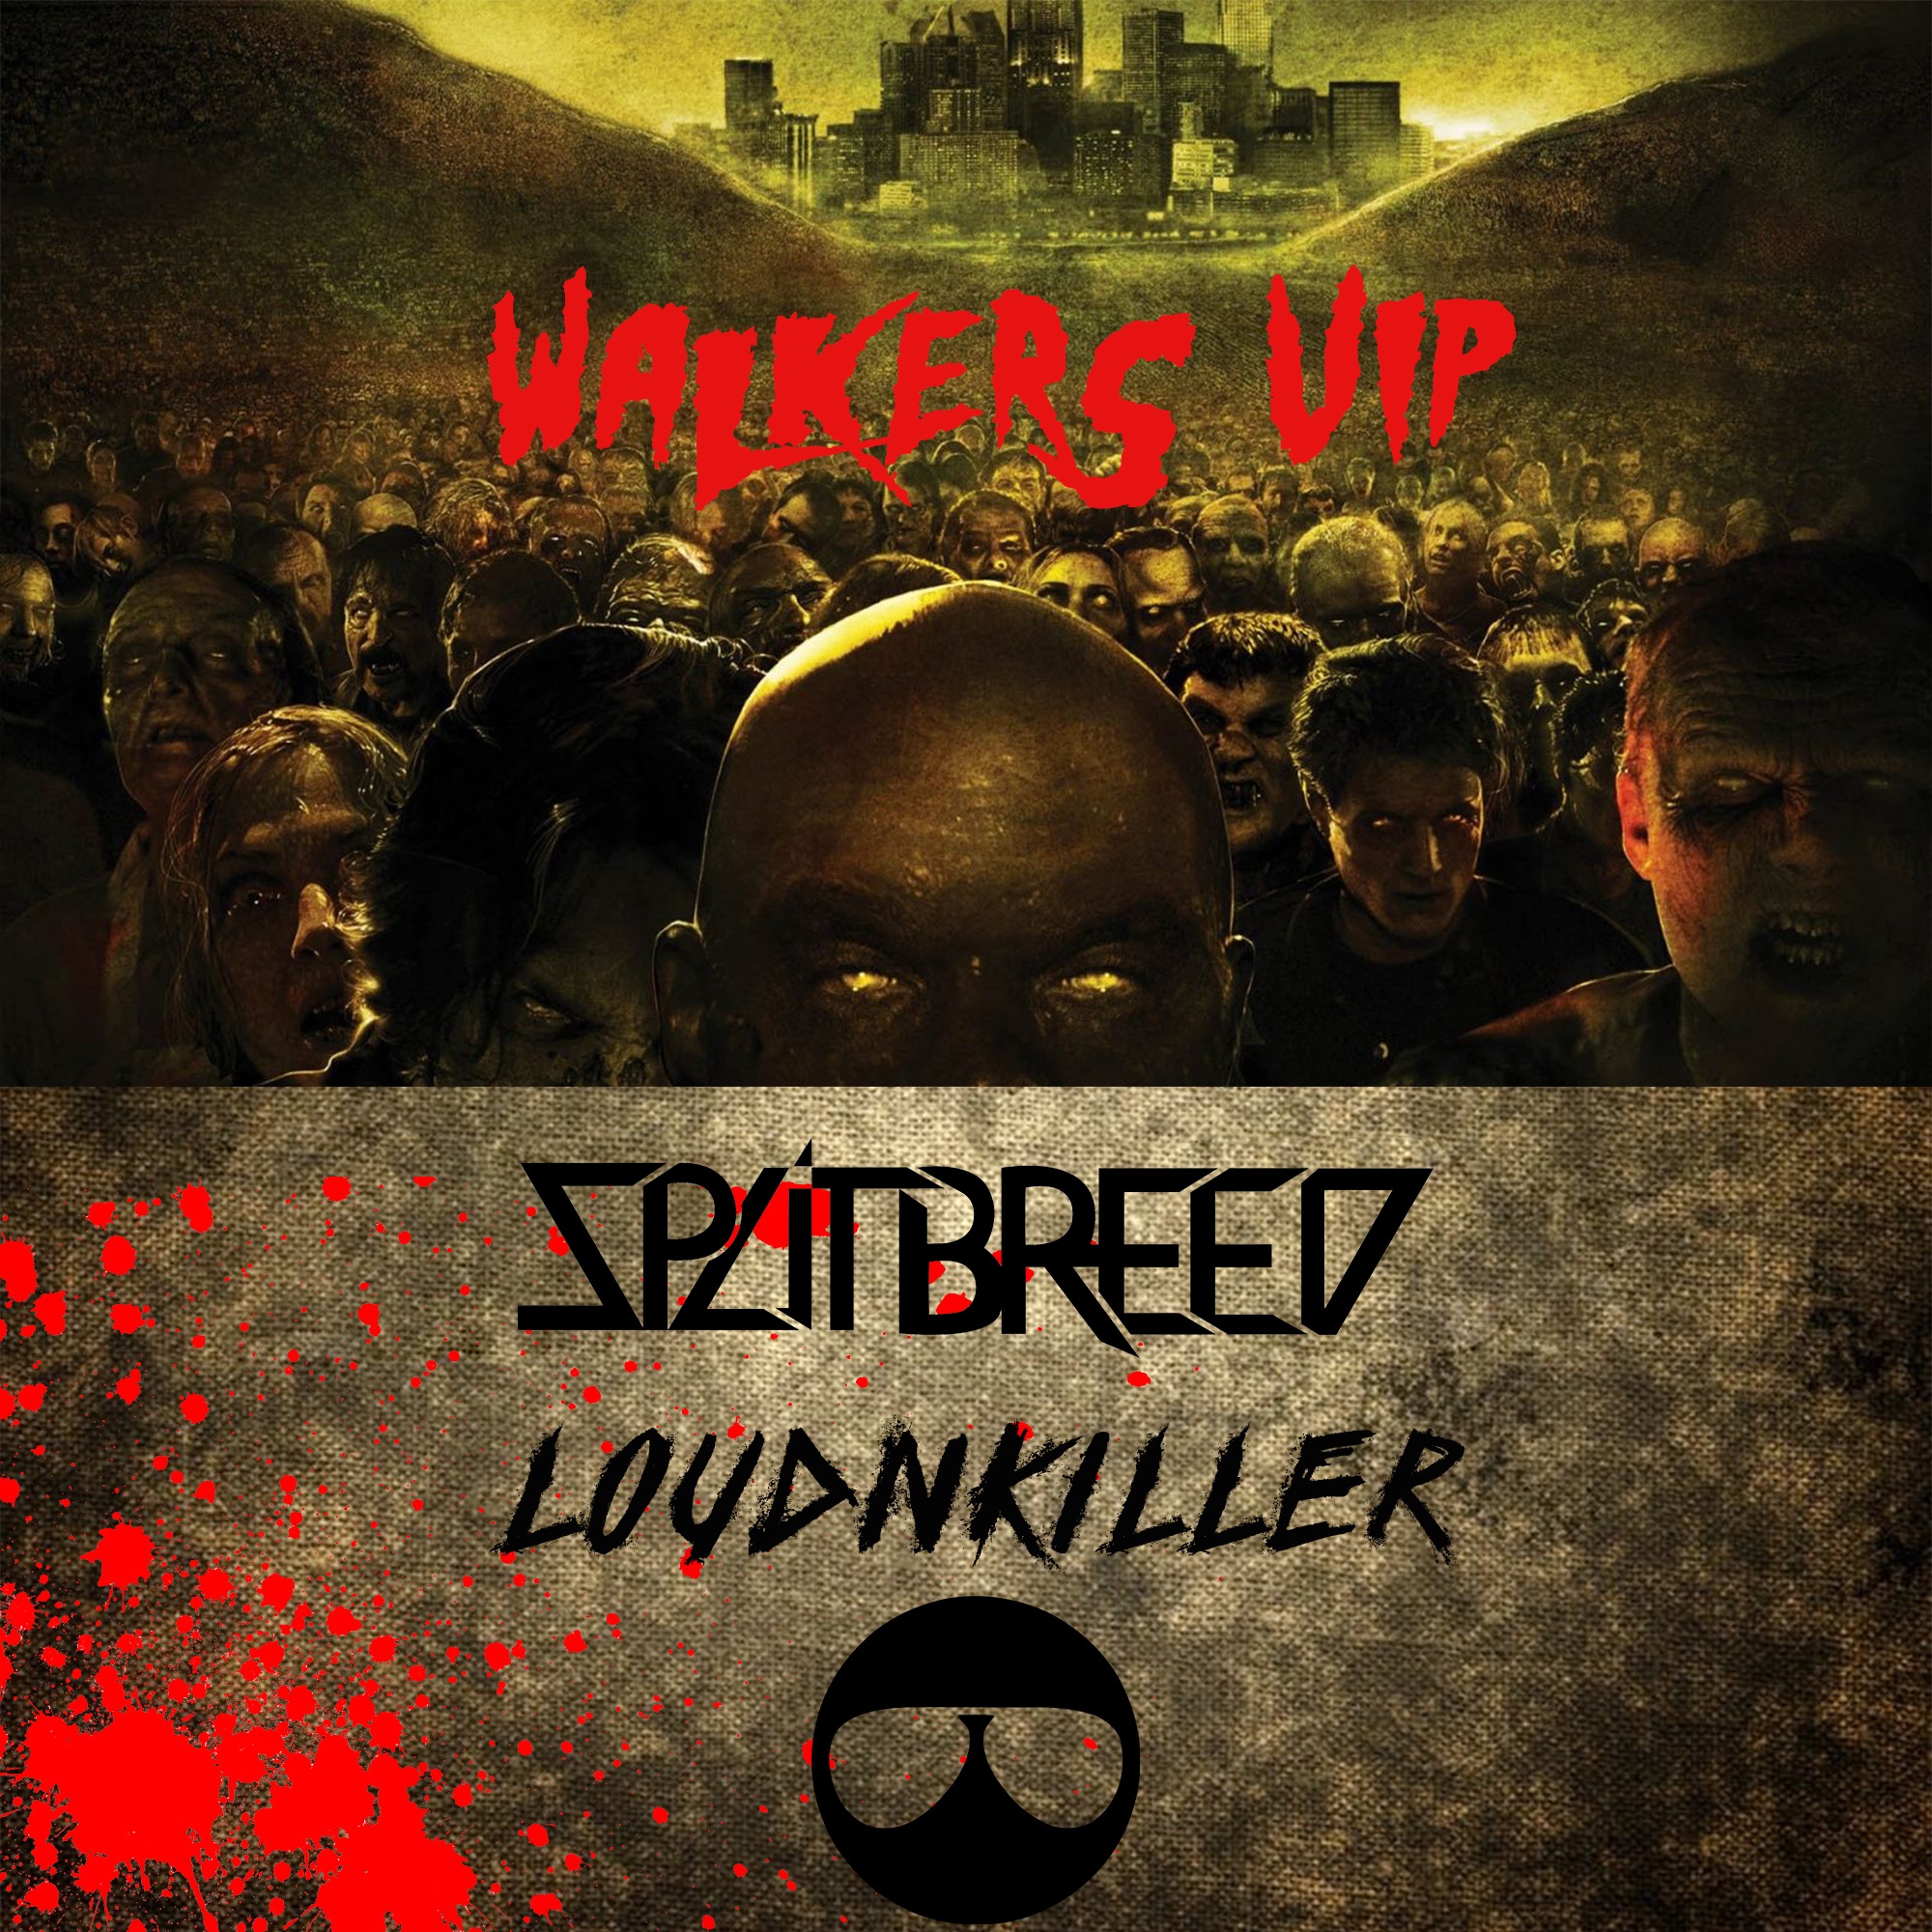 Elŝuti SPLITBREED & LOUD N' KILLER - WALKERS (VIP)